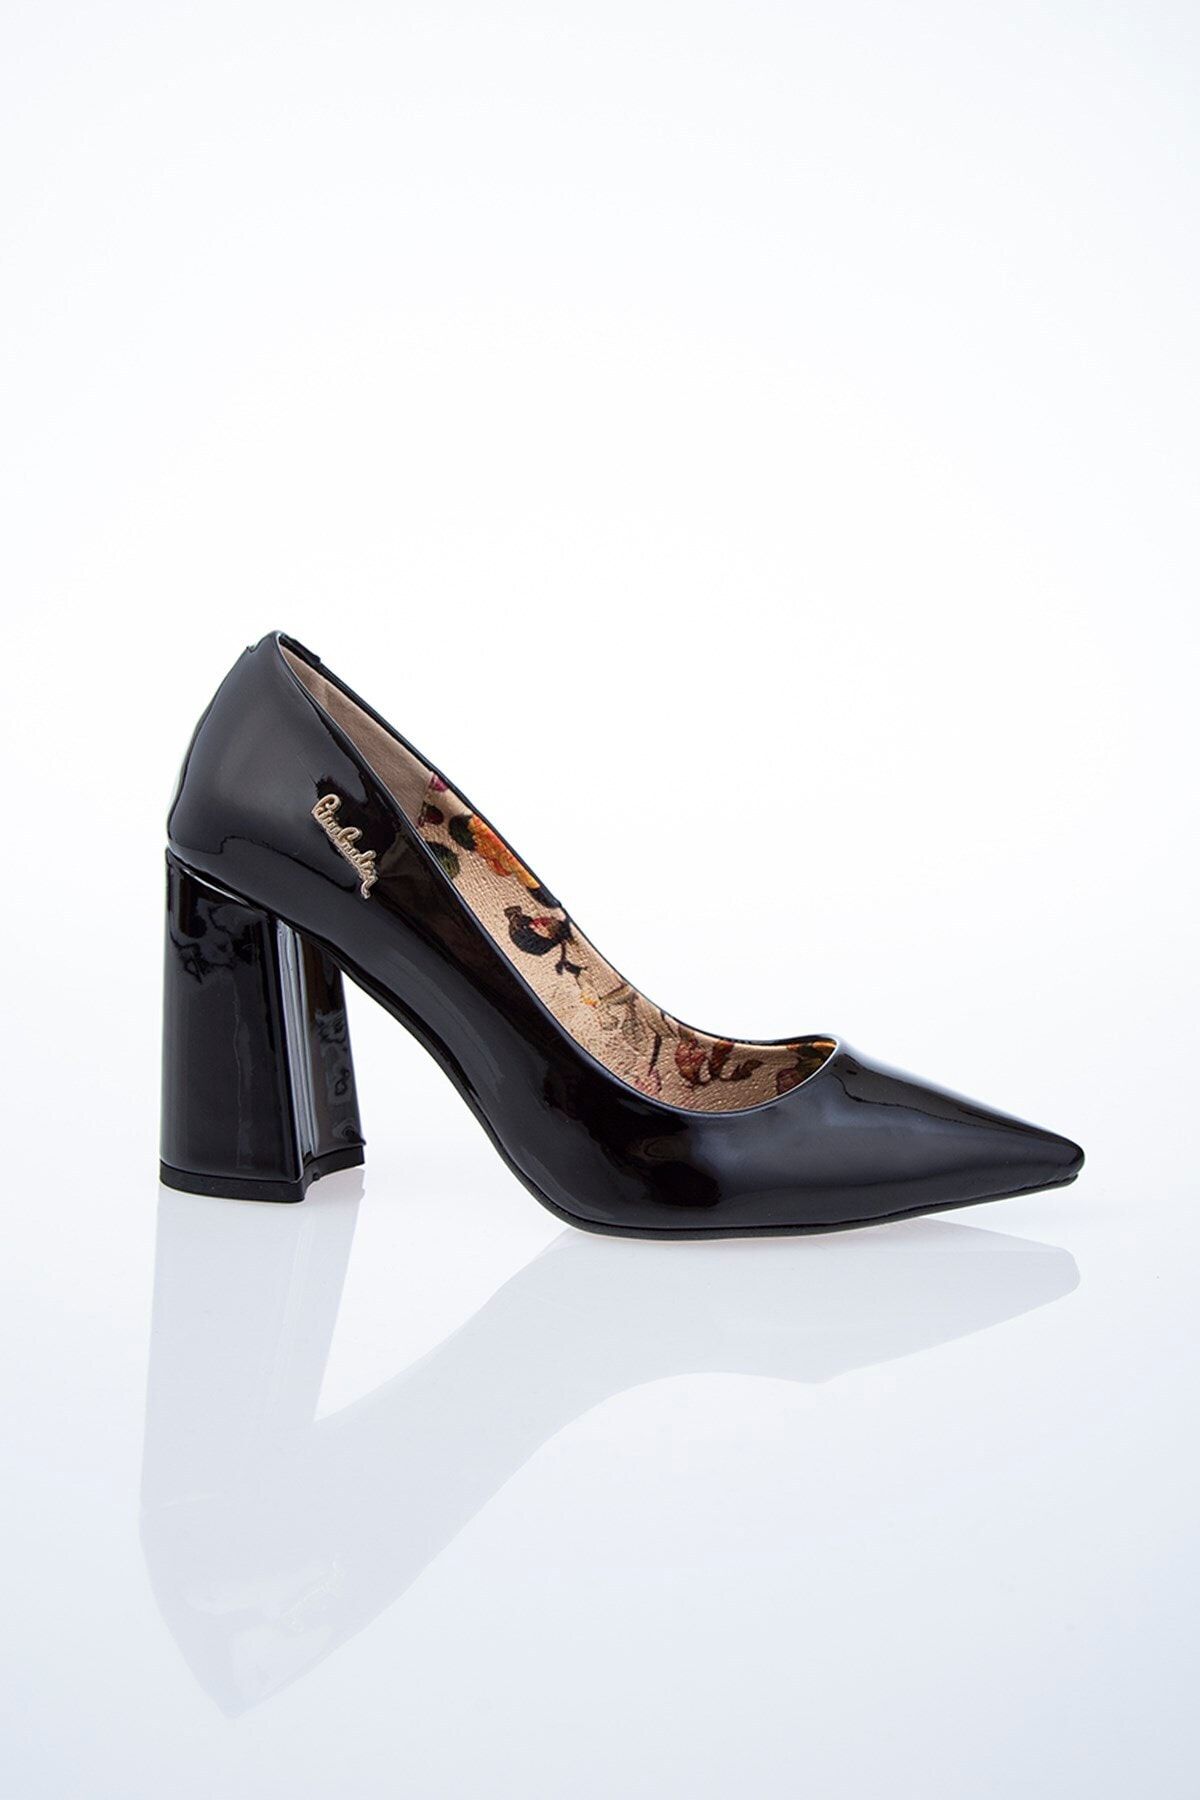 Pierre Cardin Pc-50312 Siyah Kadın Ayakkabı